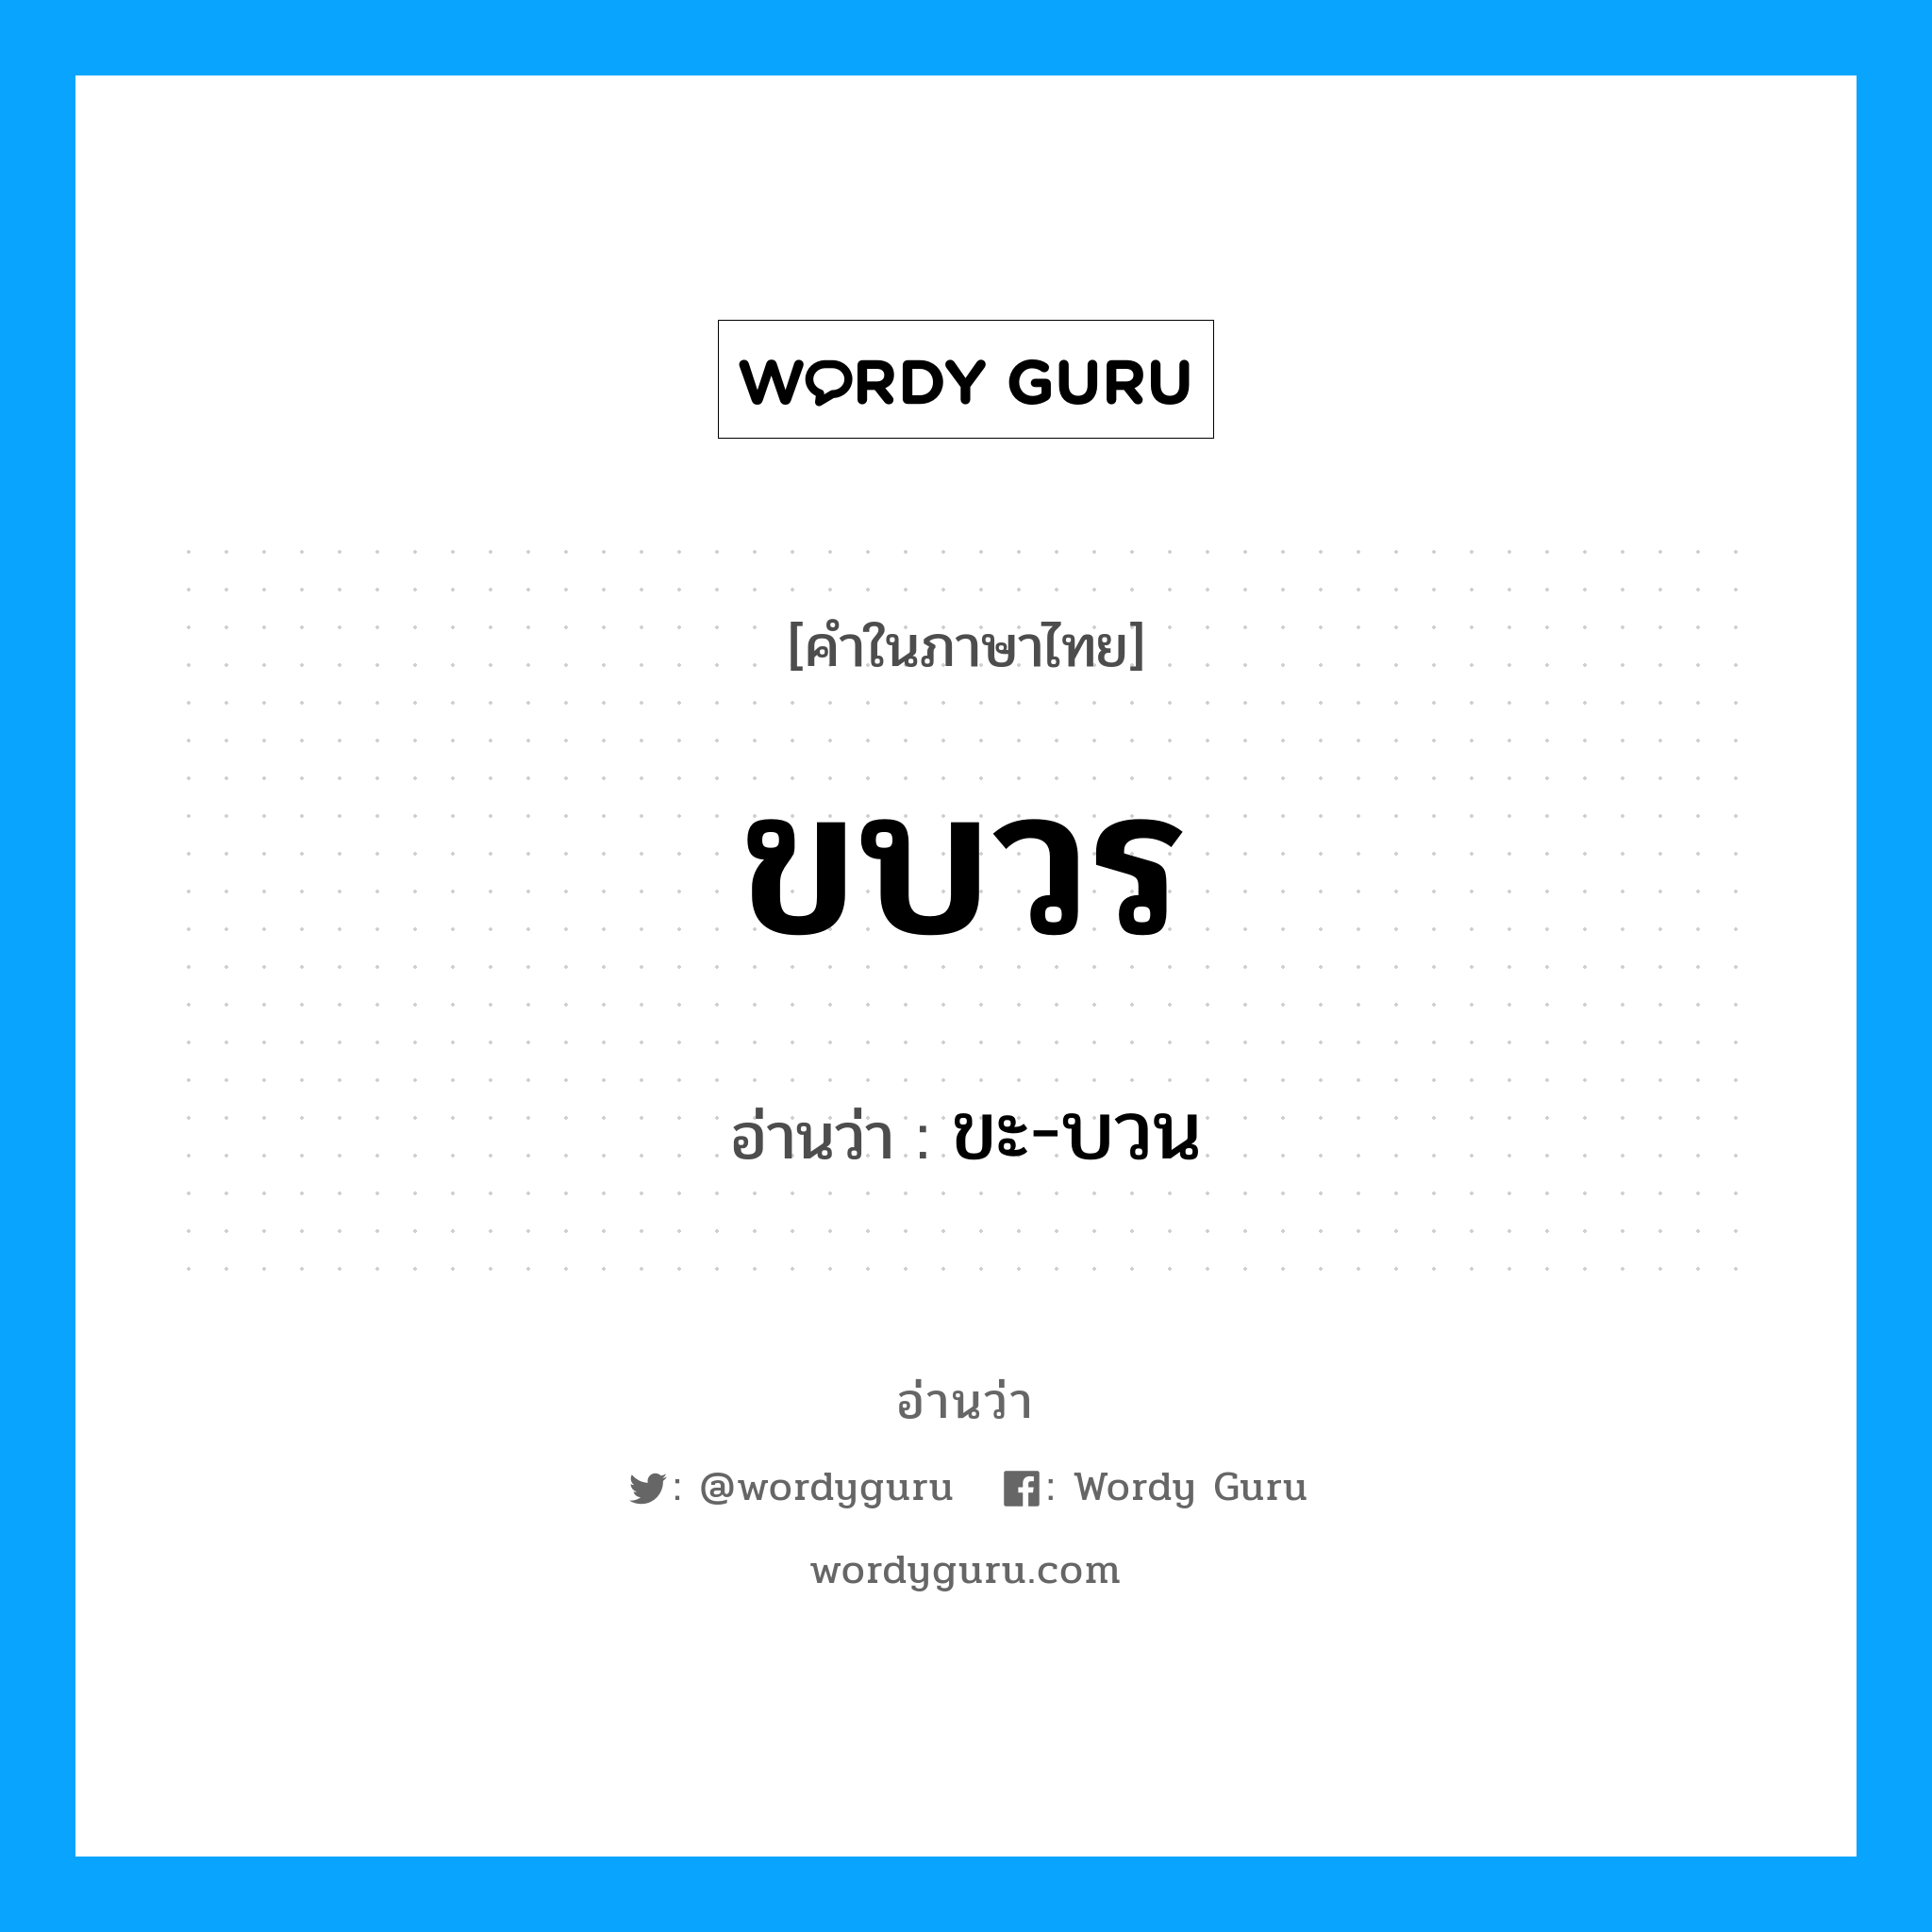 ขะ-บวน เป็นคำอ่านของคำไหน?, คำในภาษาไทย ขะ-บวน อ่านว่า ขบวร